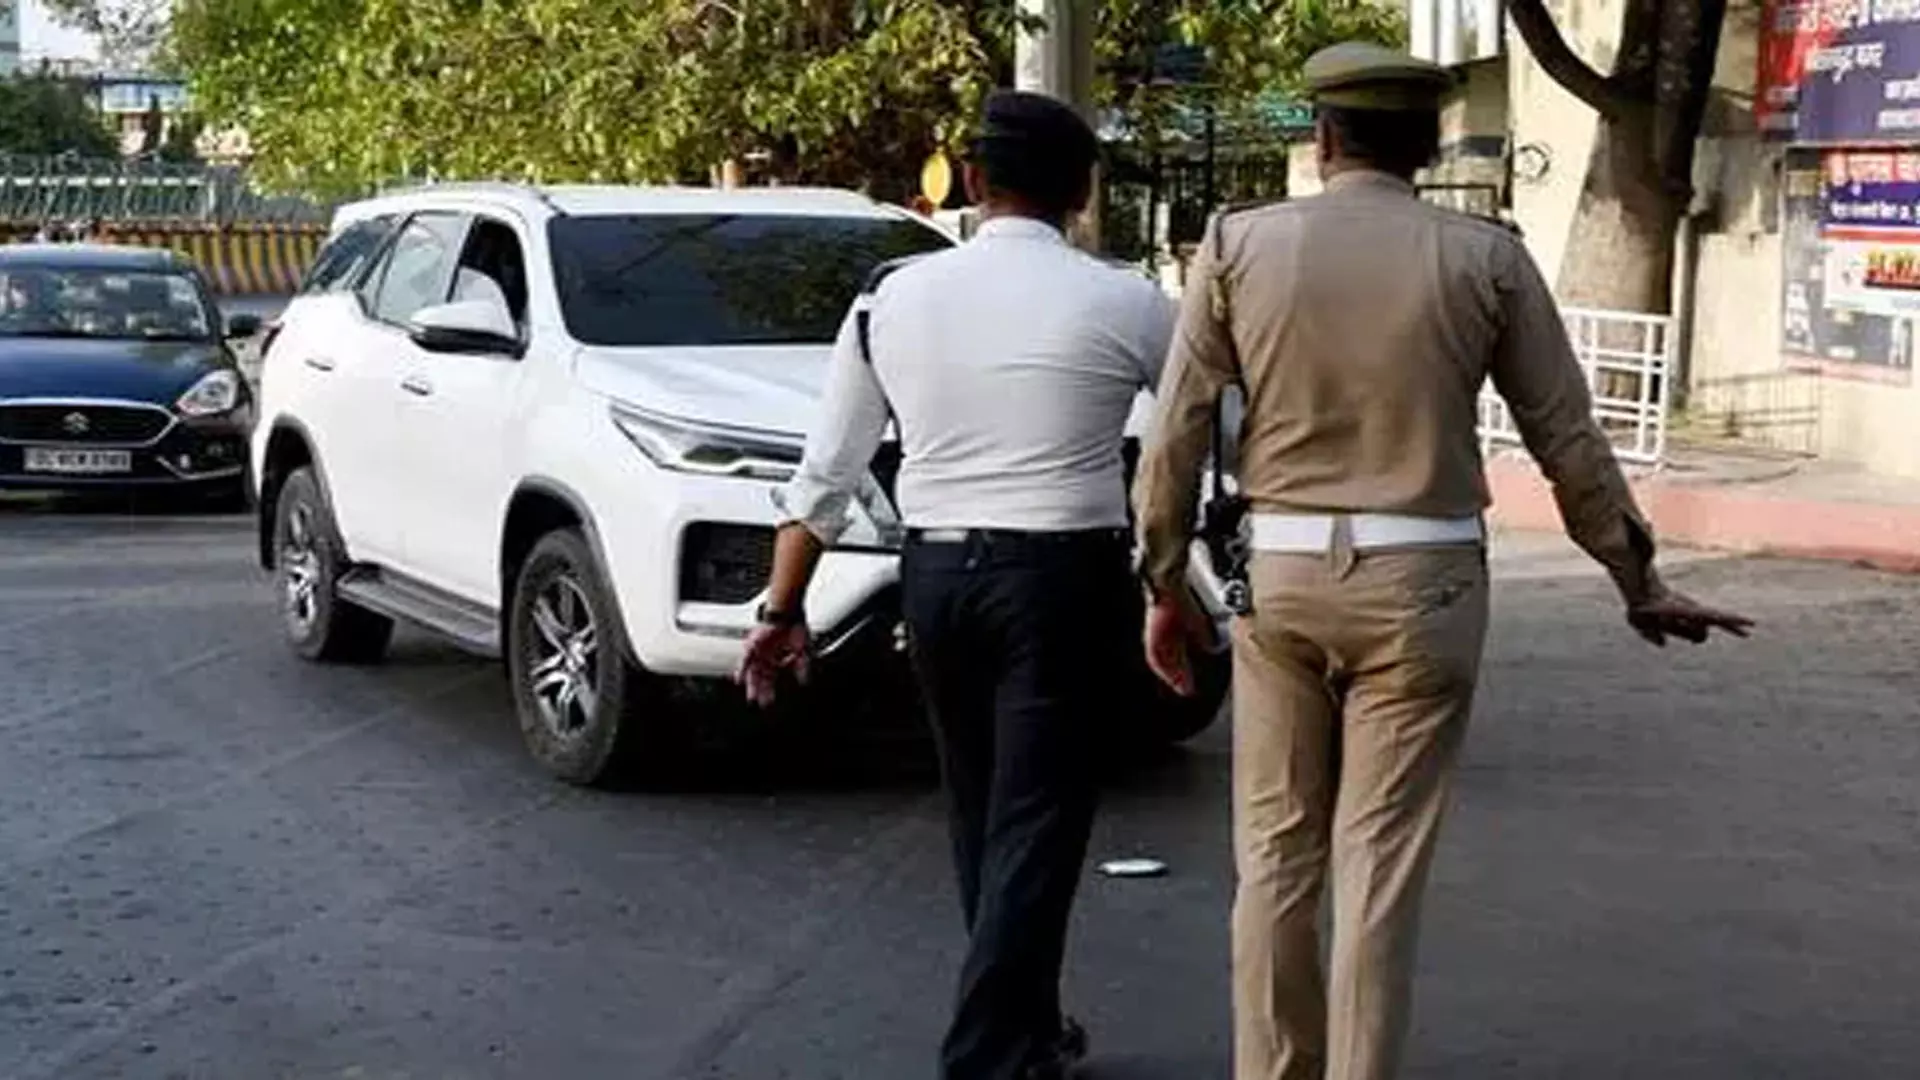 NOIDA: जी.बी. नगर में वाहनों पर लगे अवैध स्टिकरों के खिलाफ पुलिस की कार्रवाई